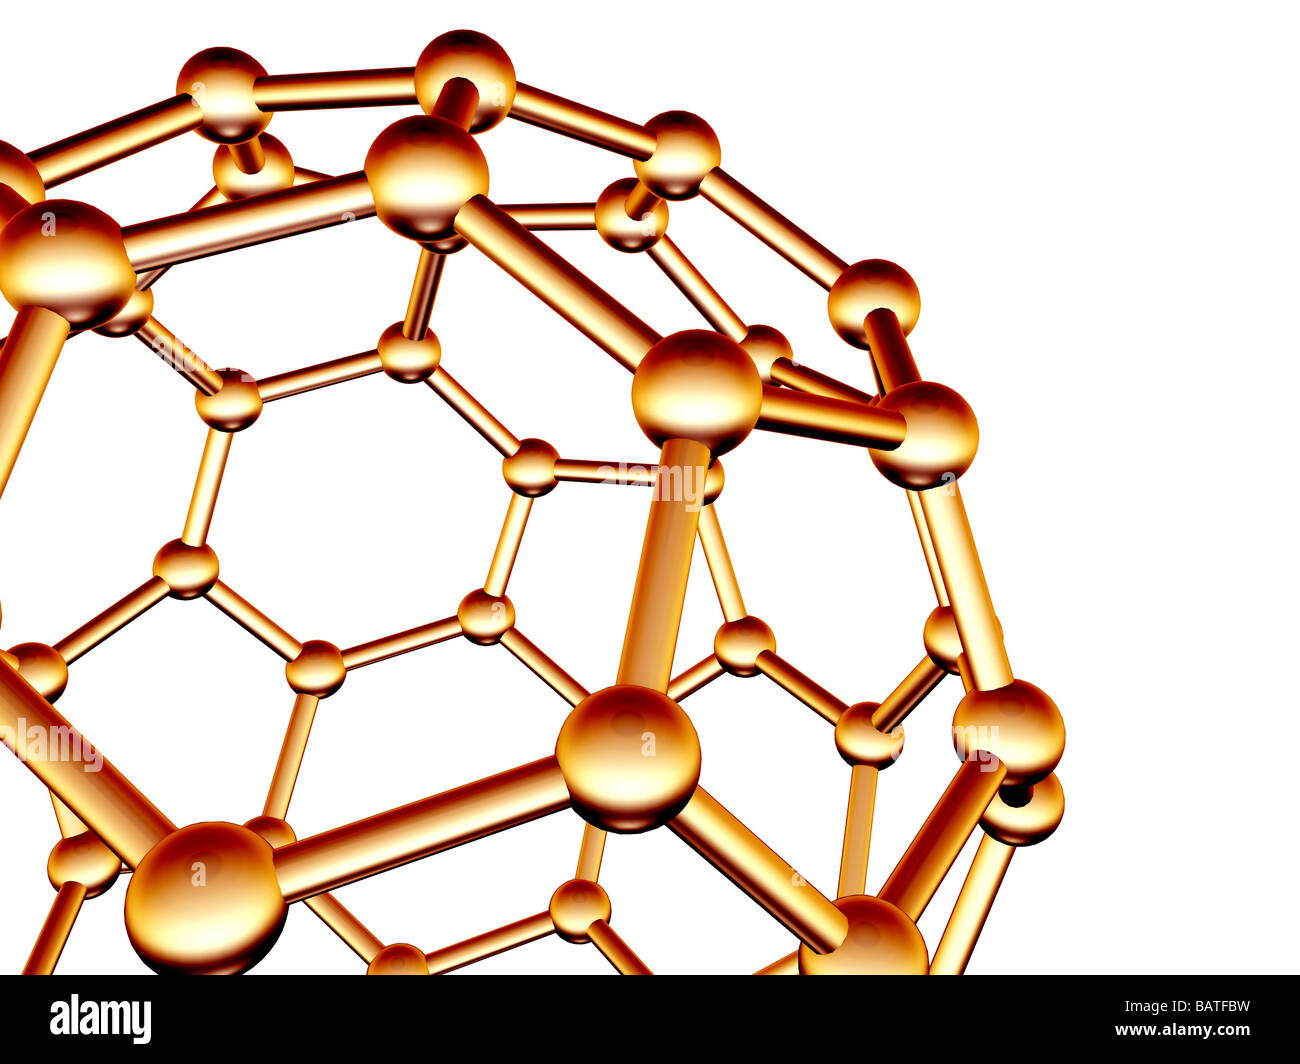 Buckminsterfulleren Molekül. Molekulares Modell des ein Fulleren-Molekül, ein strukturell unterschiedliche form(allotrope) des Kohlenstoffs. Stockfoto